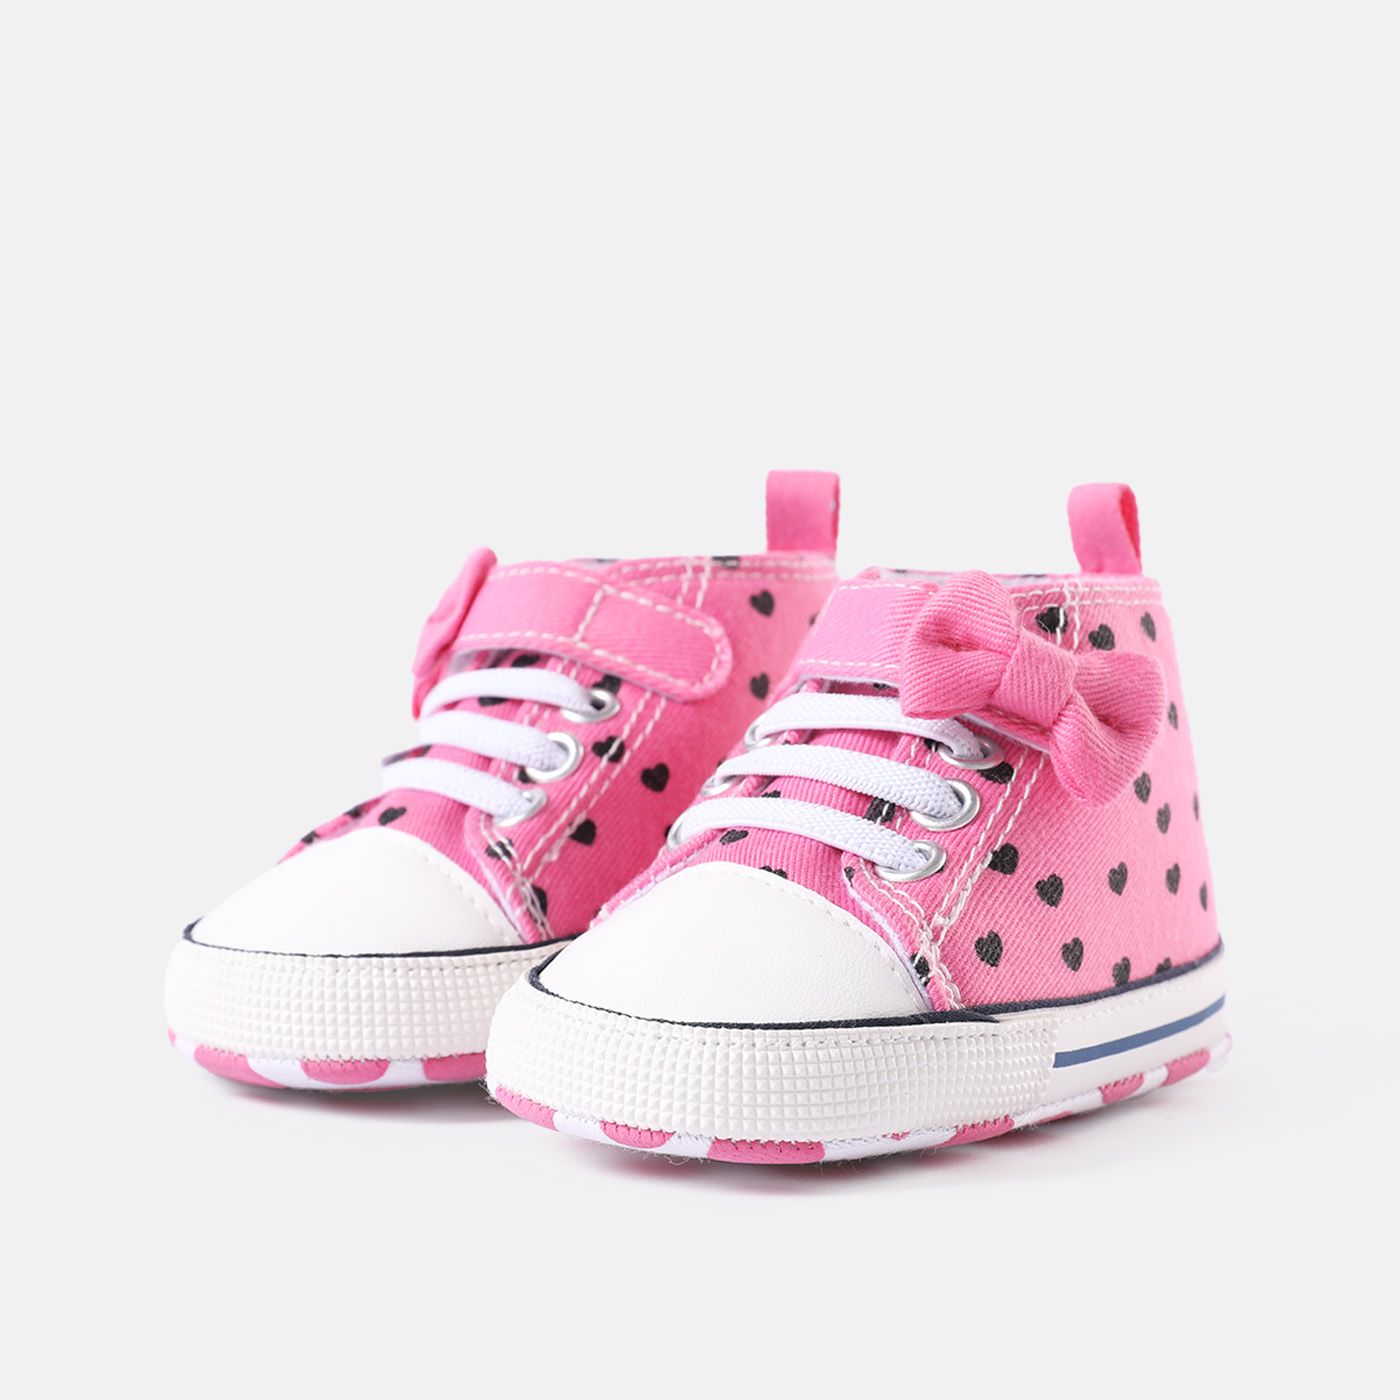 Chaussures De Prewalker à Imprimé Coeur Pour Bébé / Enfant En Bas âge